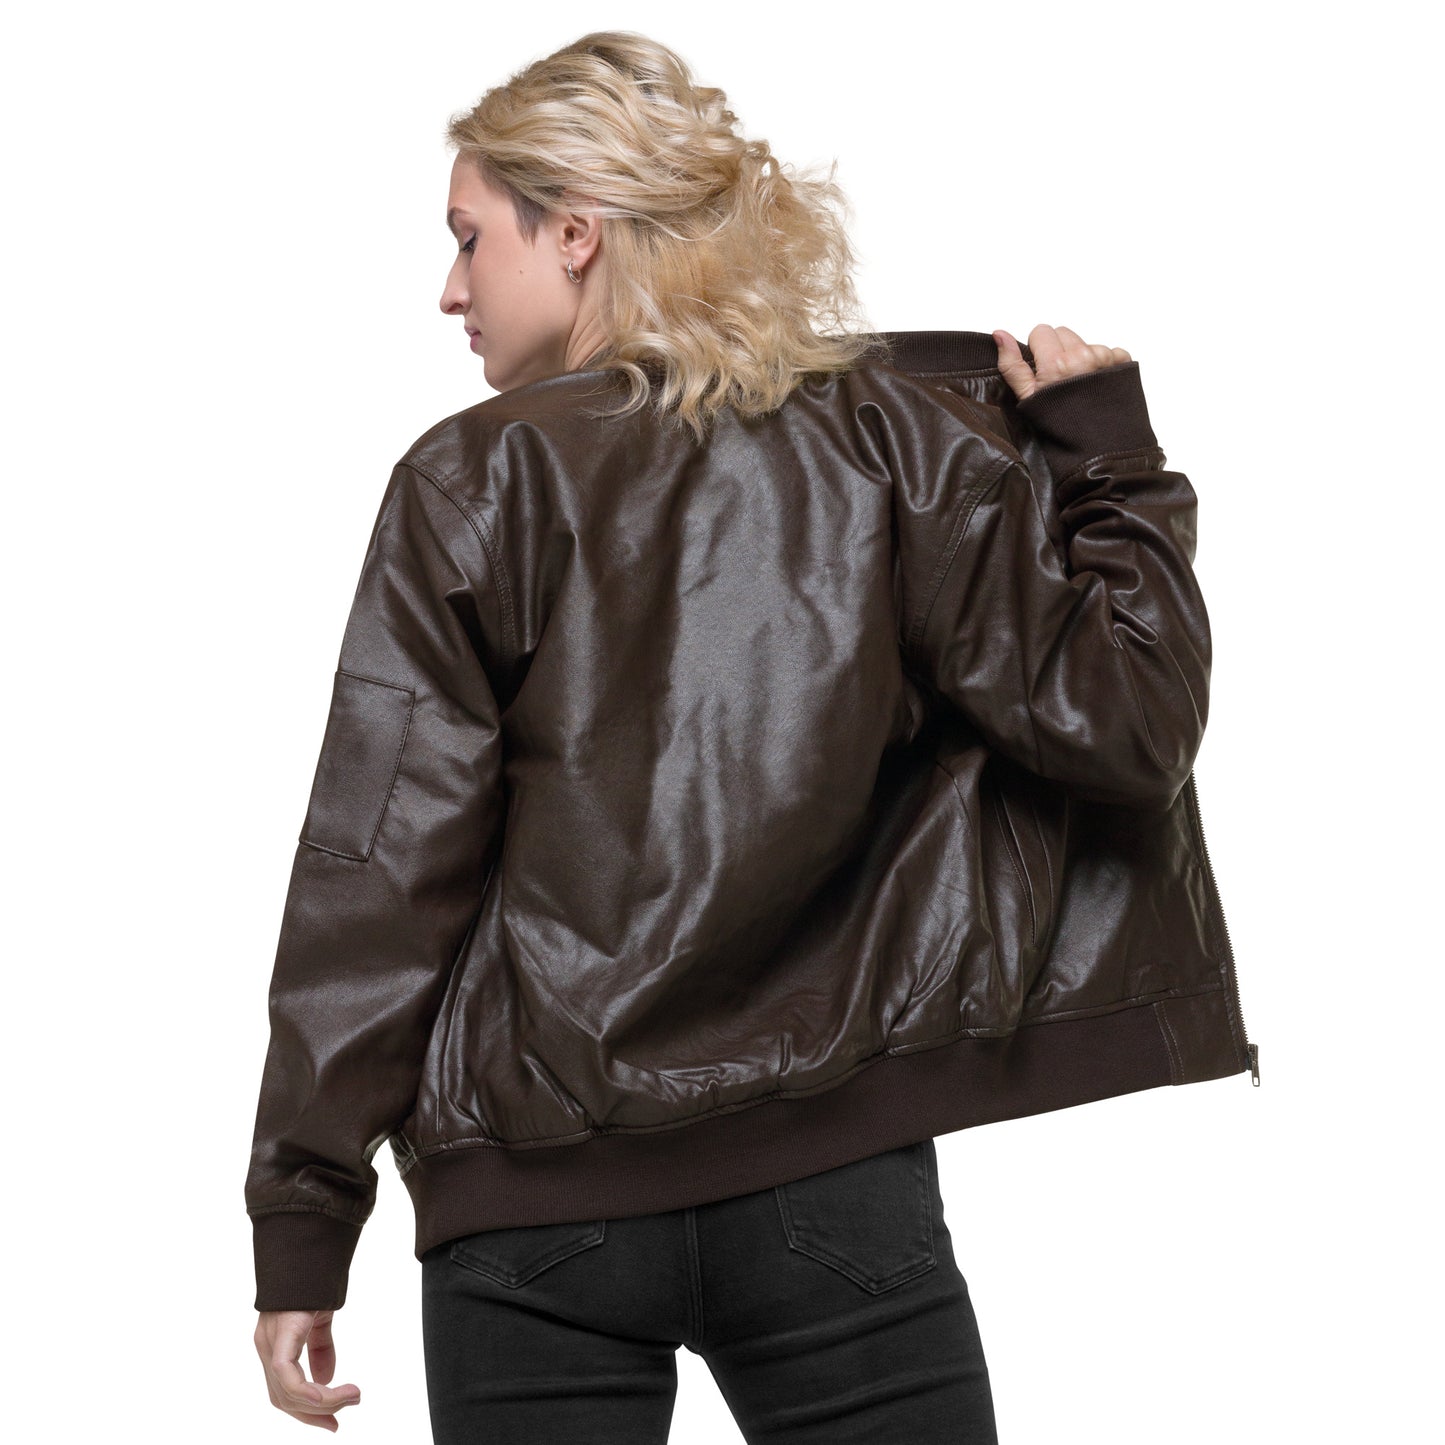 Leather Bomber Jacket - shortgirl do it better